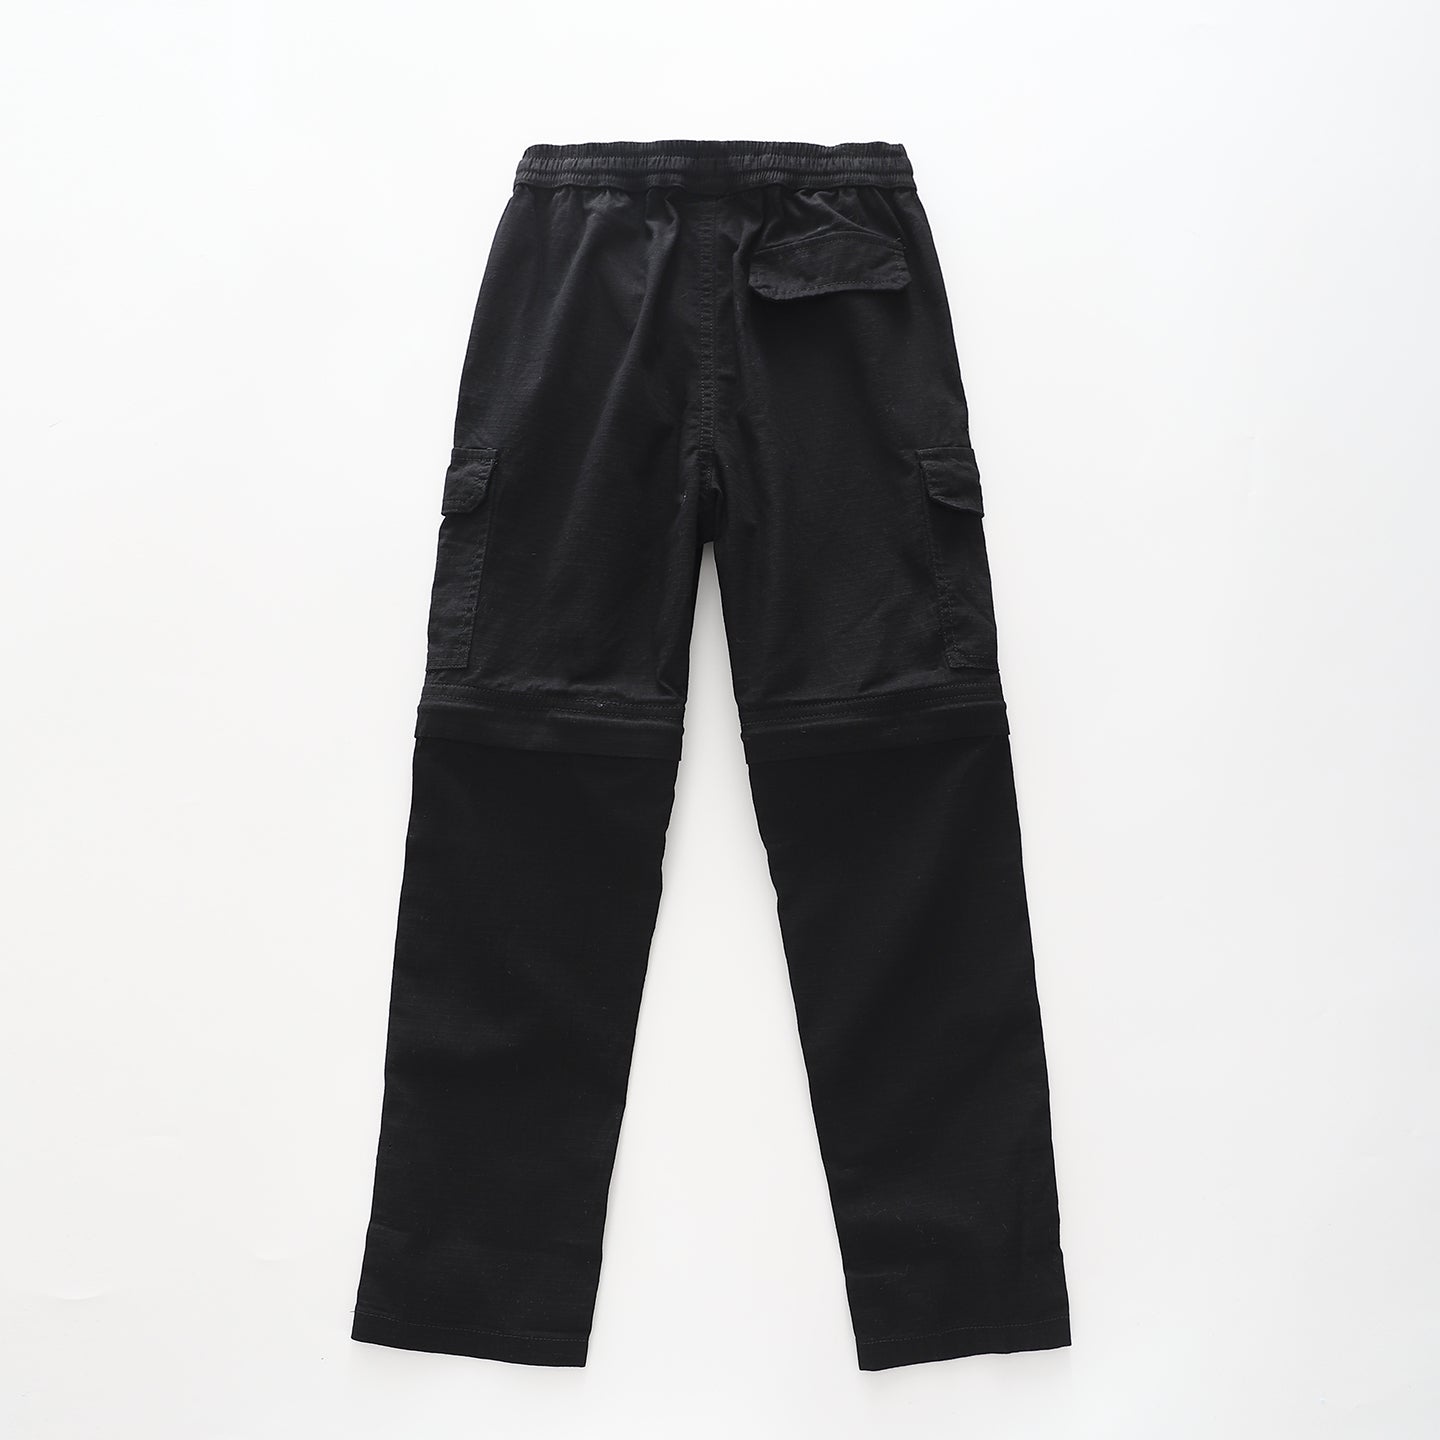 Boy's Black Cargo Zip-off Pants